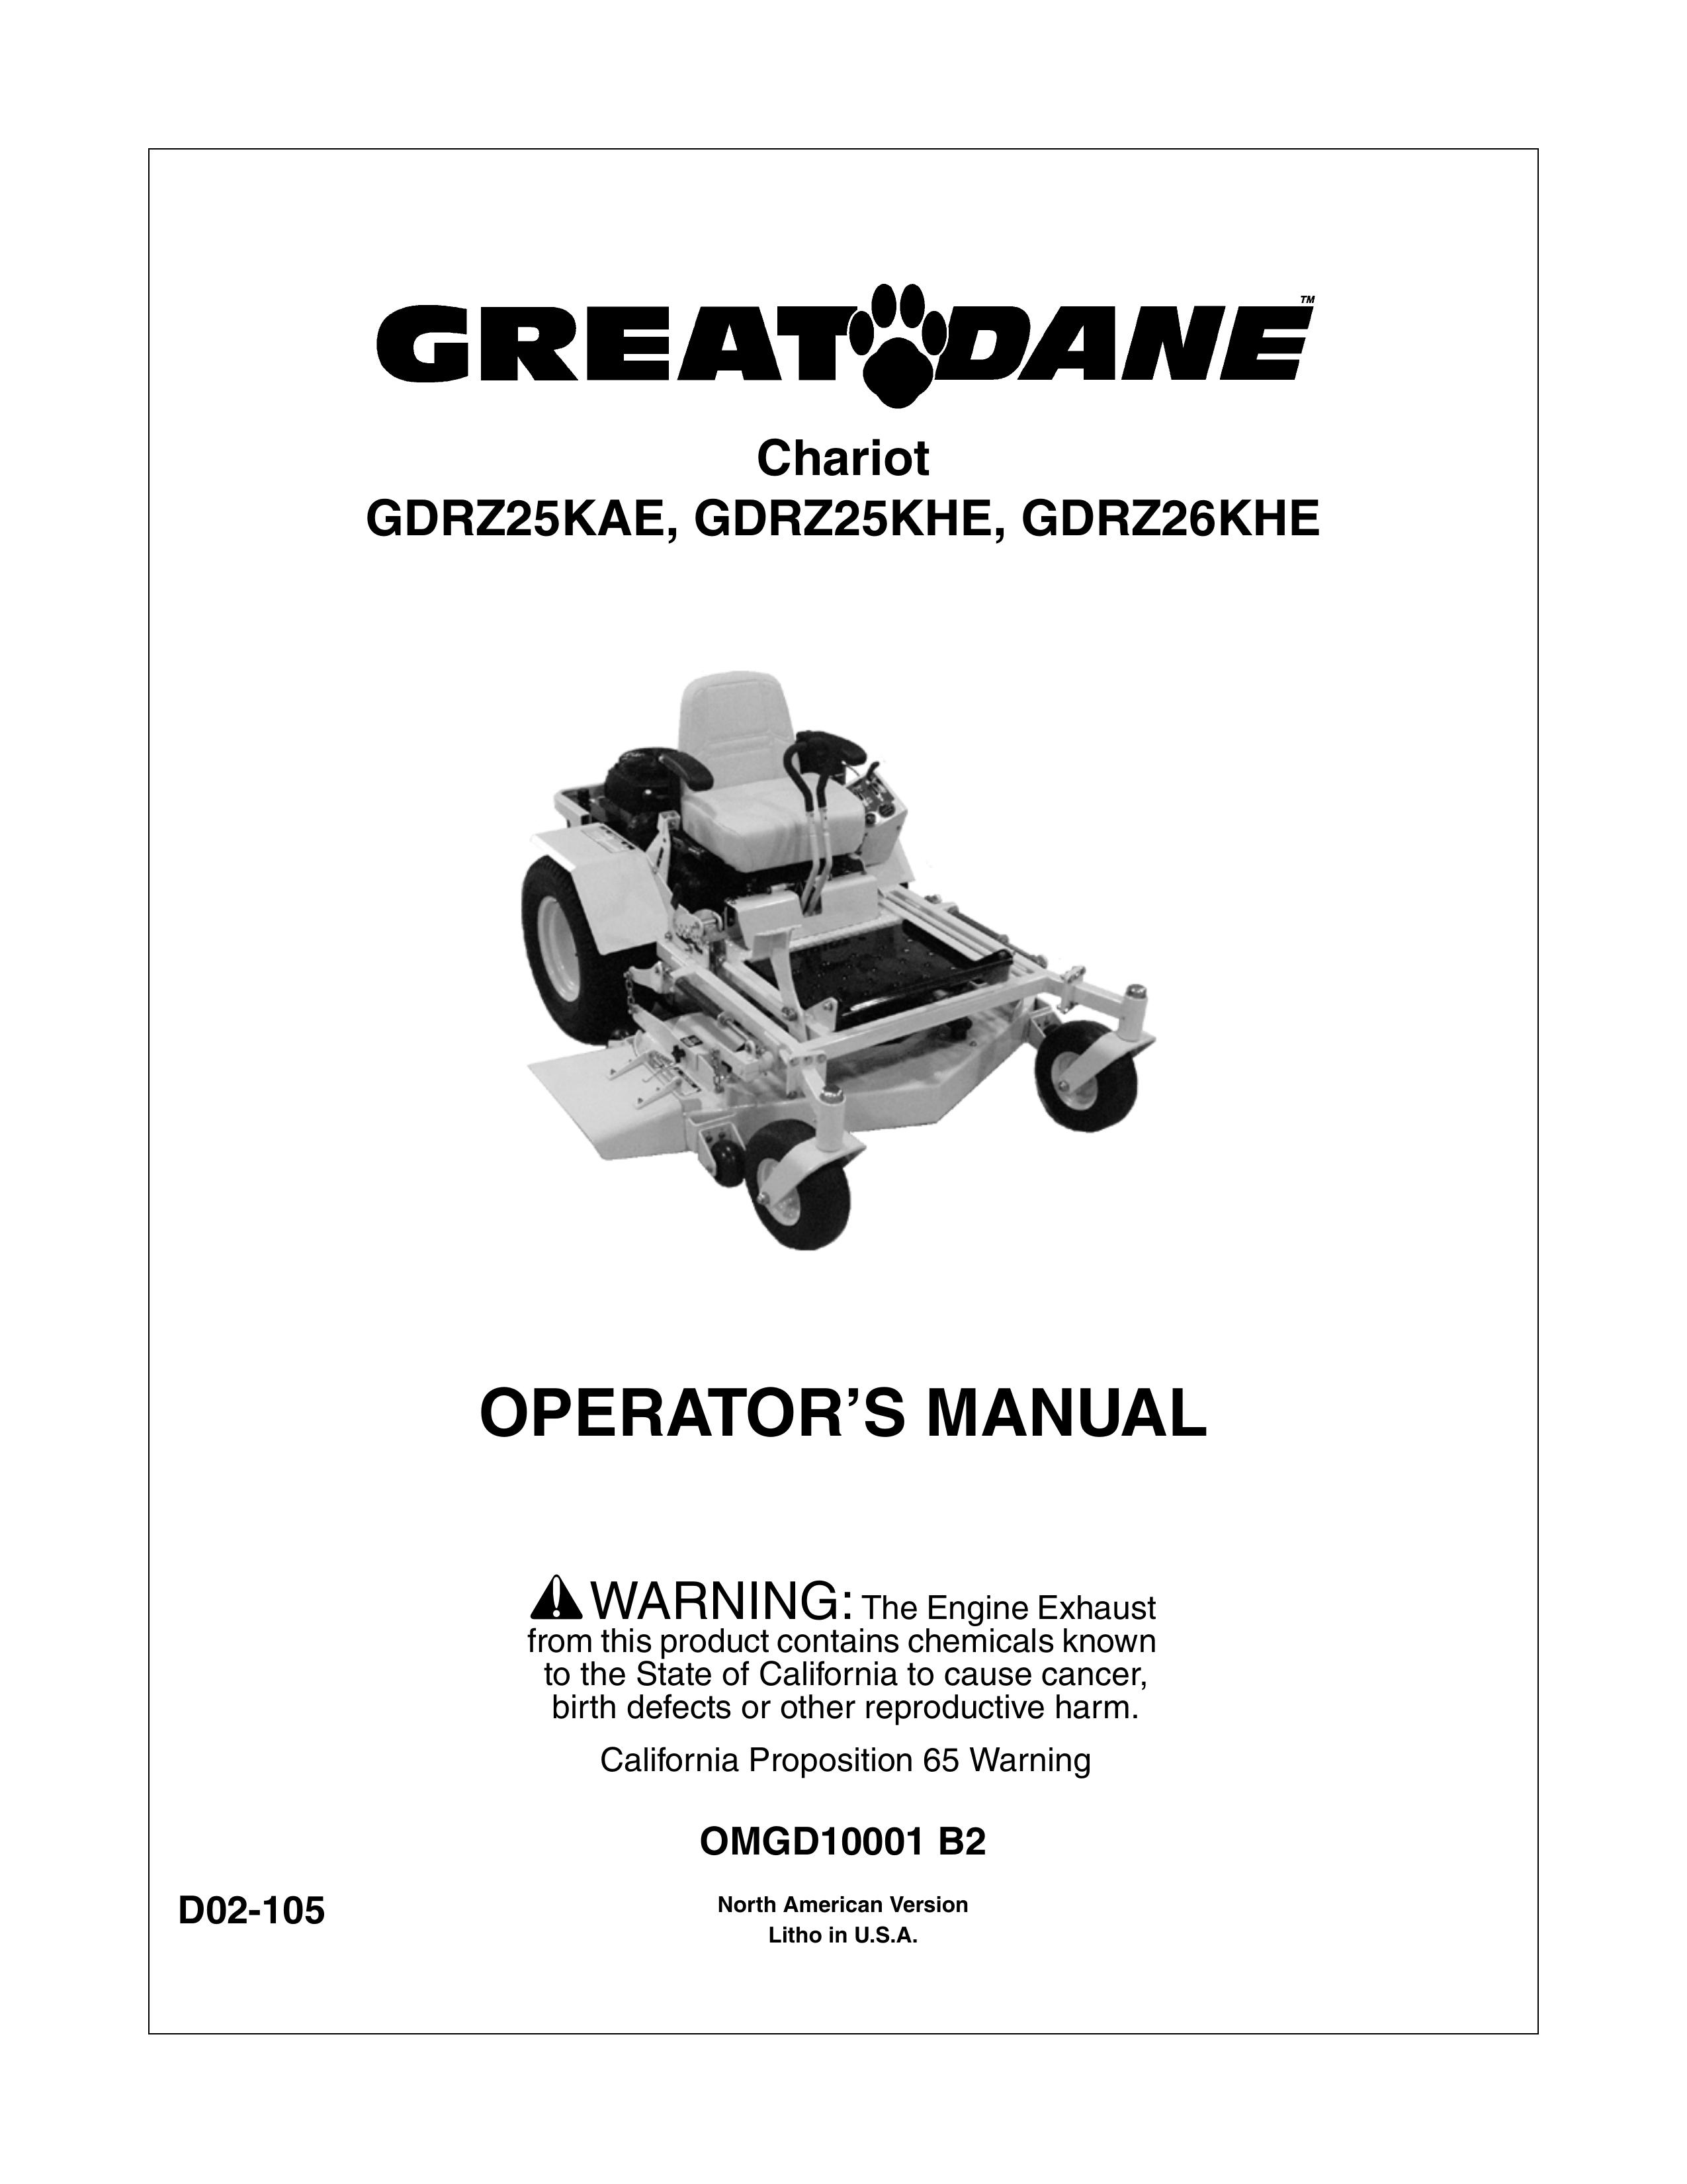 Great Dane GDRZ25KAE Lawn Mower User Manual